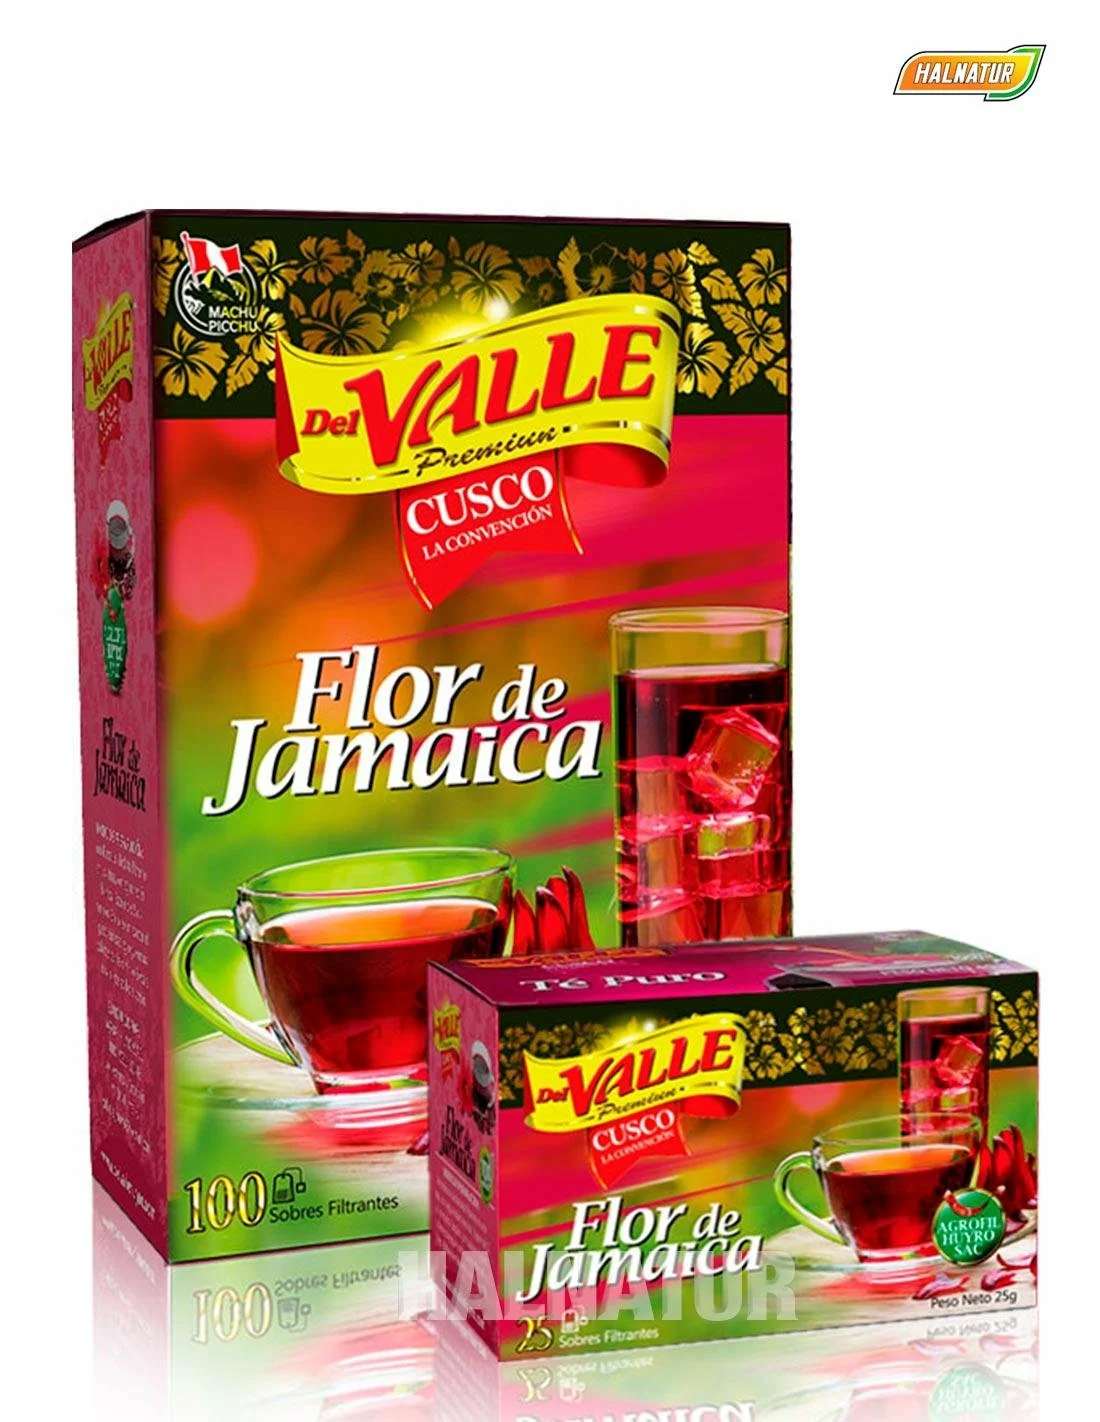 FLOR DE JAMAICA marca Del Valle